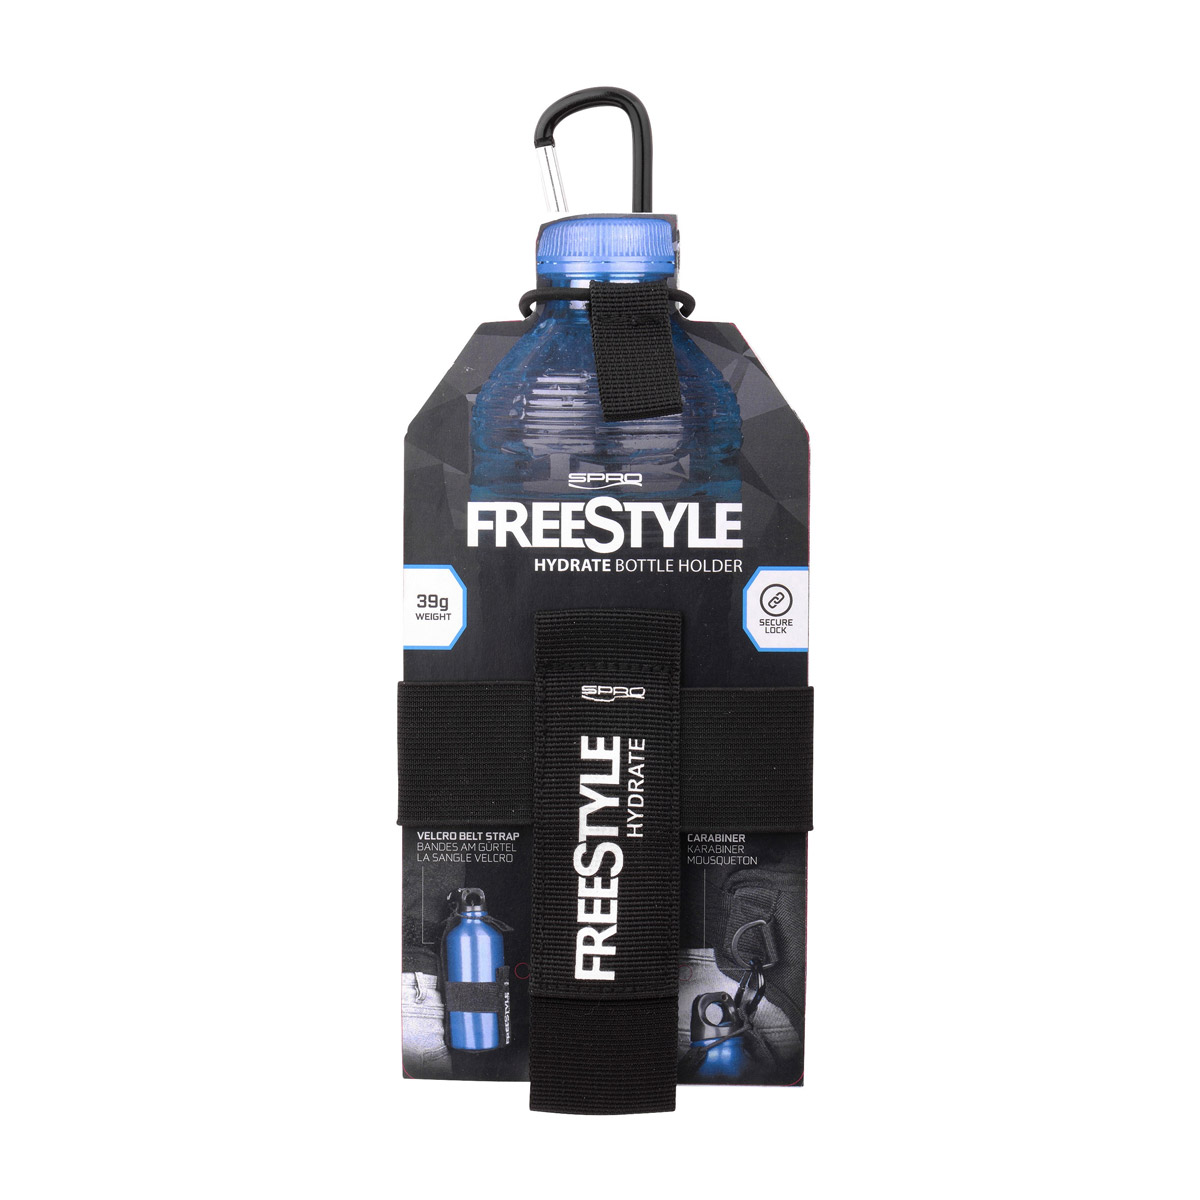 Spro freestyle bottleholder